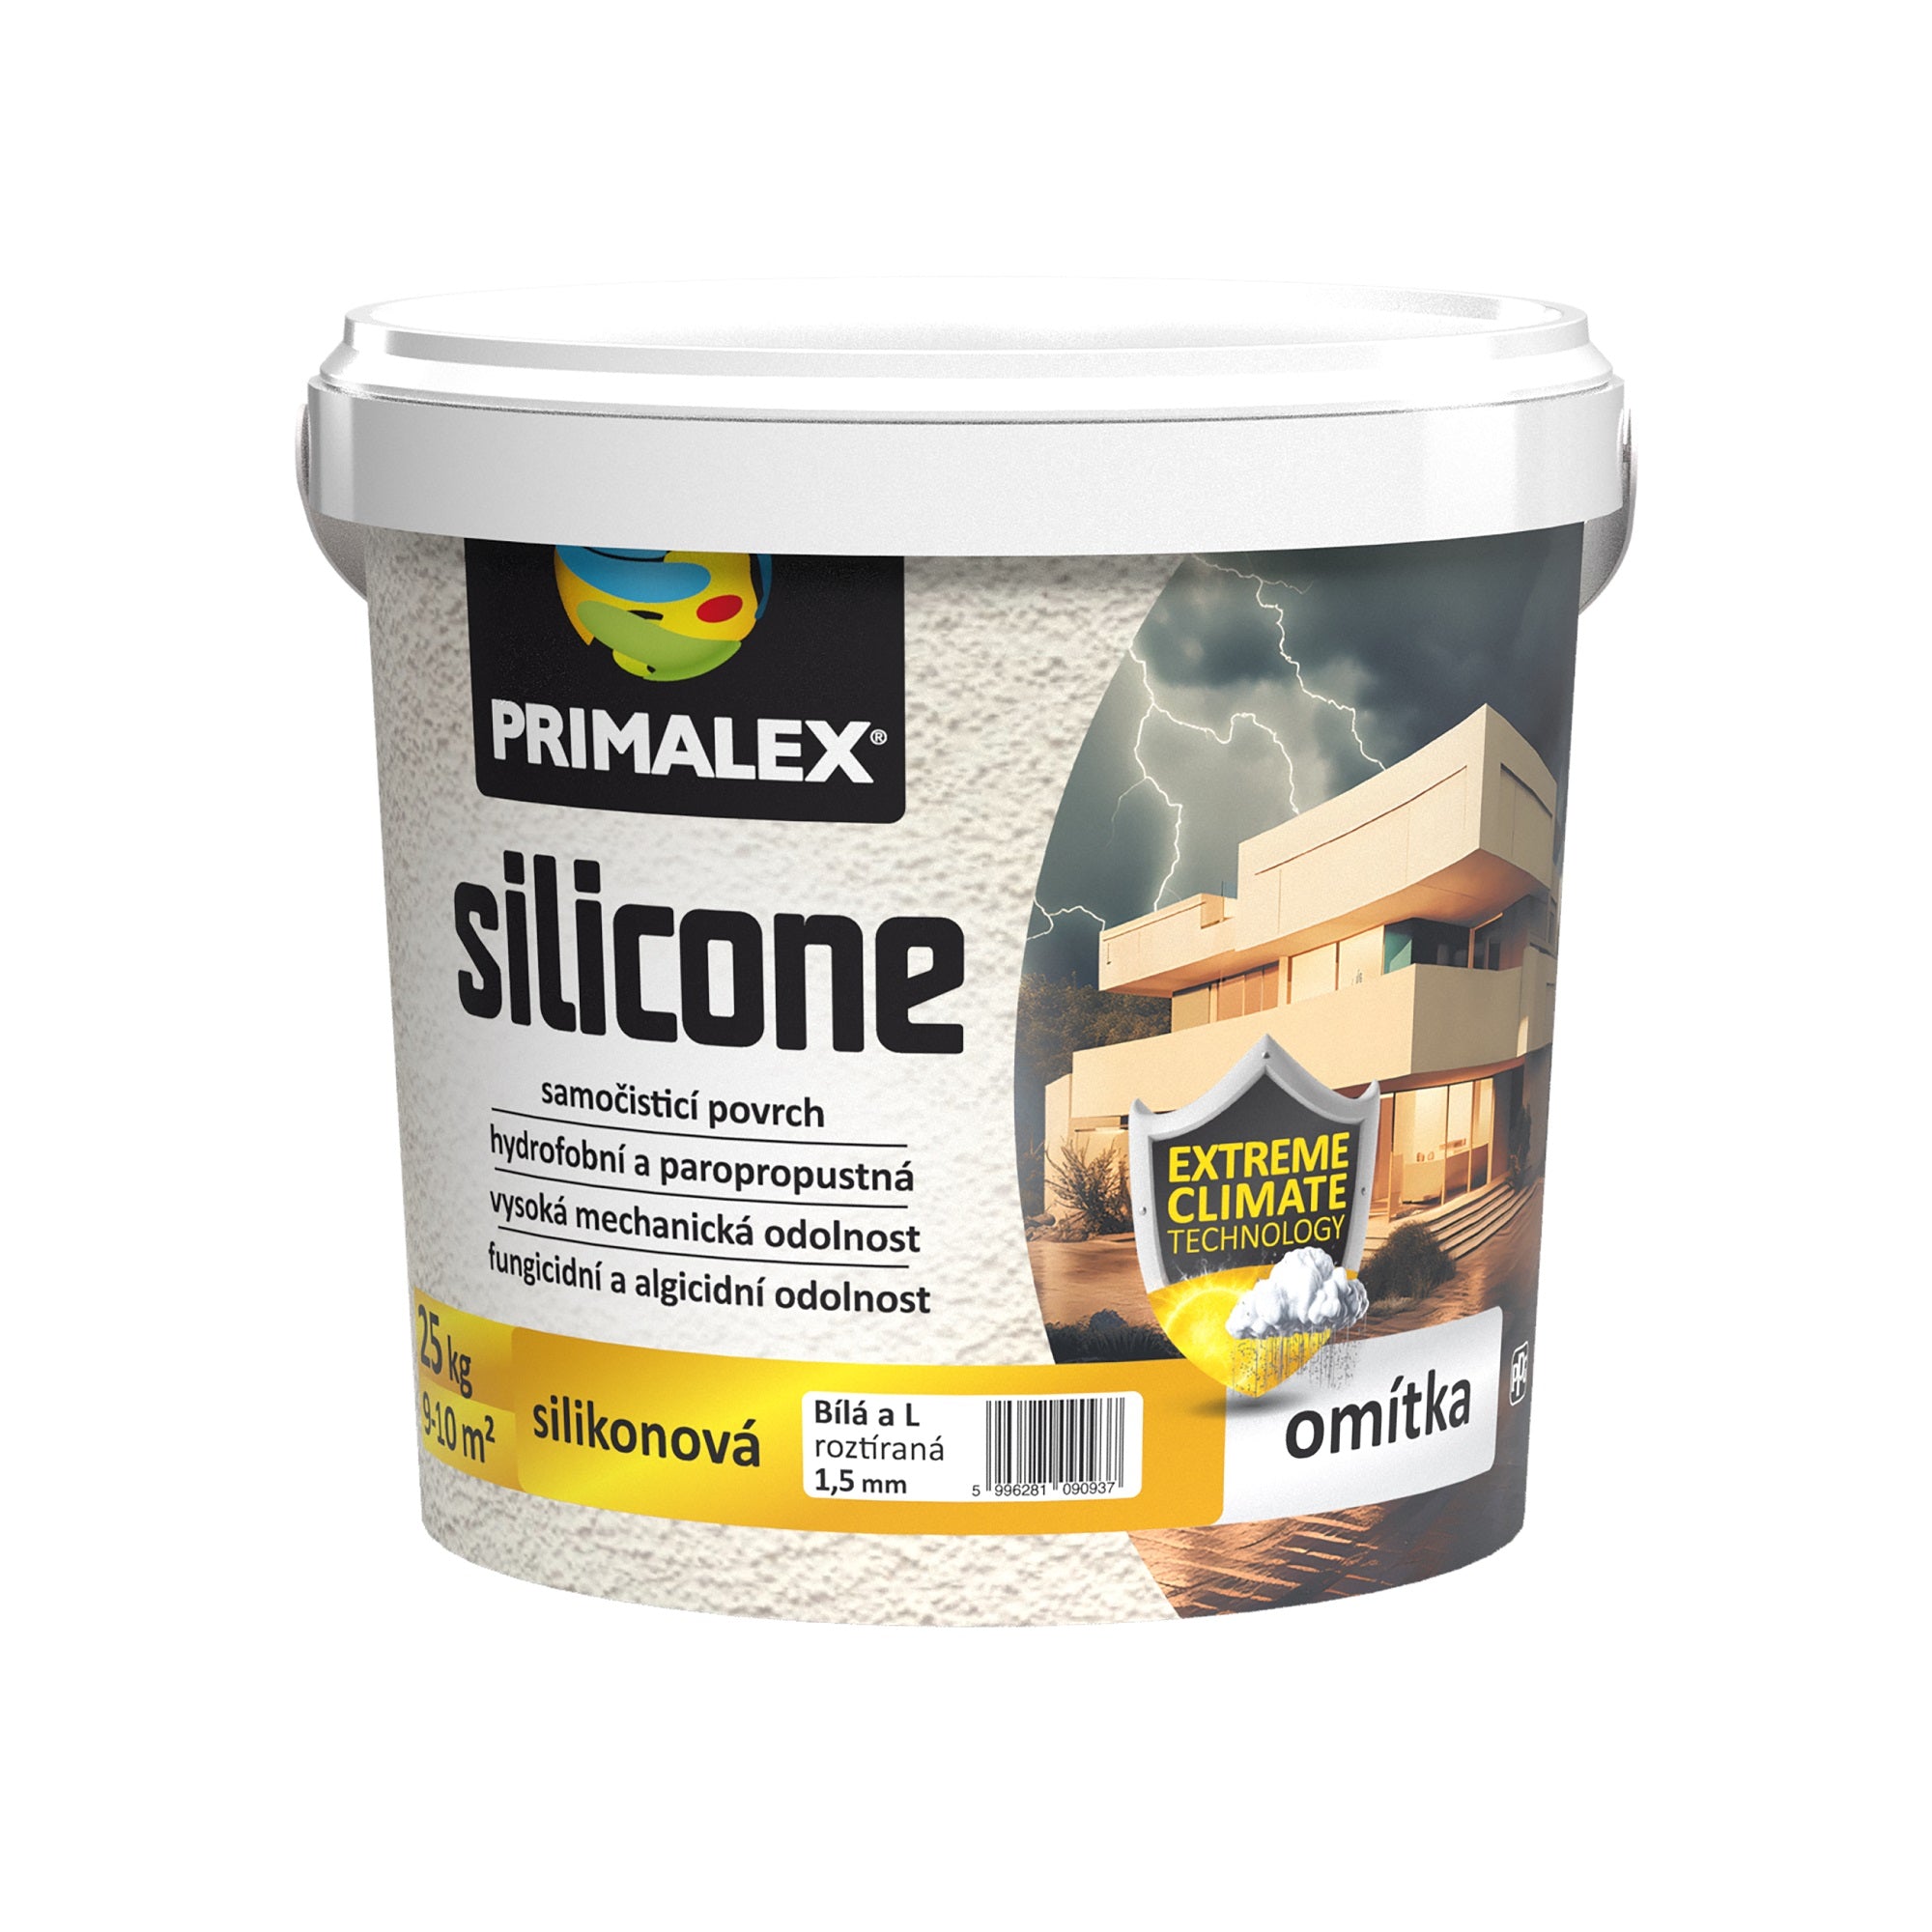 PRIMALEX silicone fasádna silikónová omietka roztieraná 25 kg